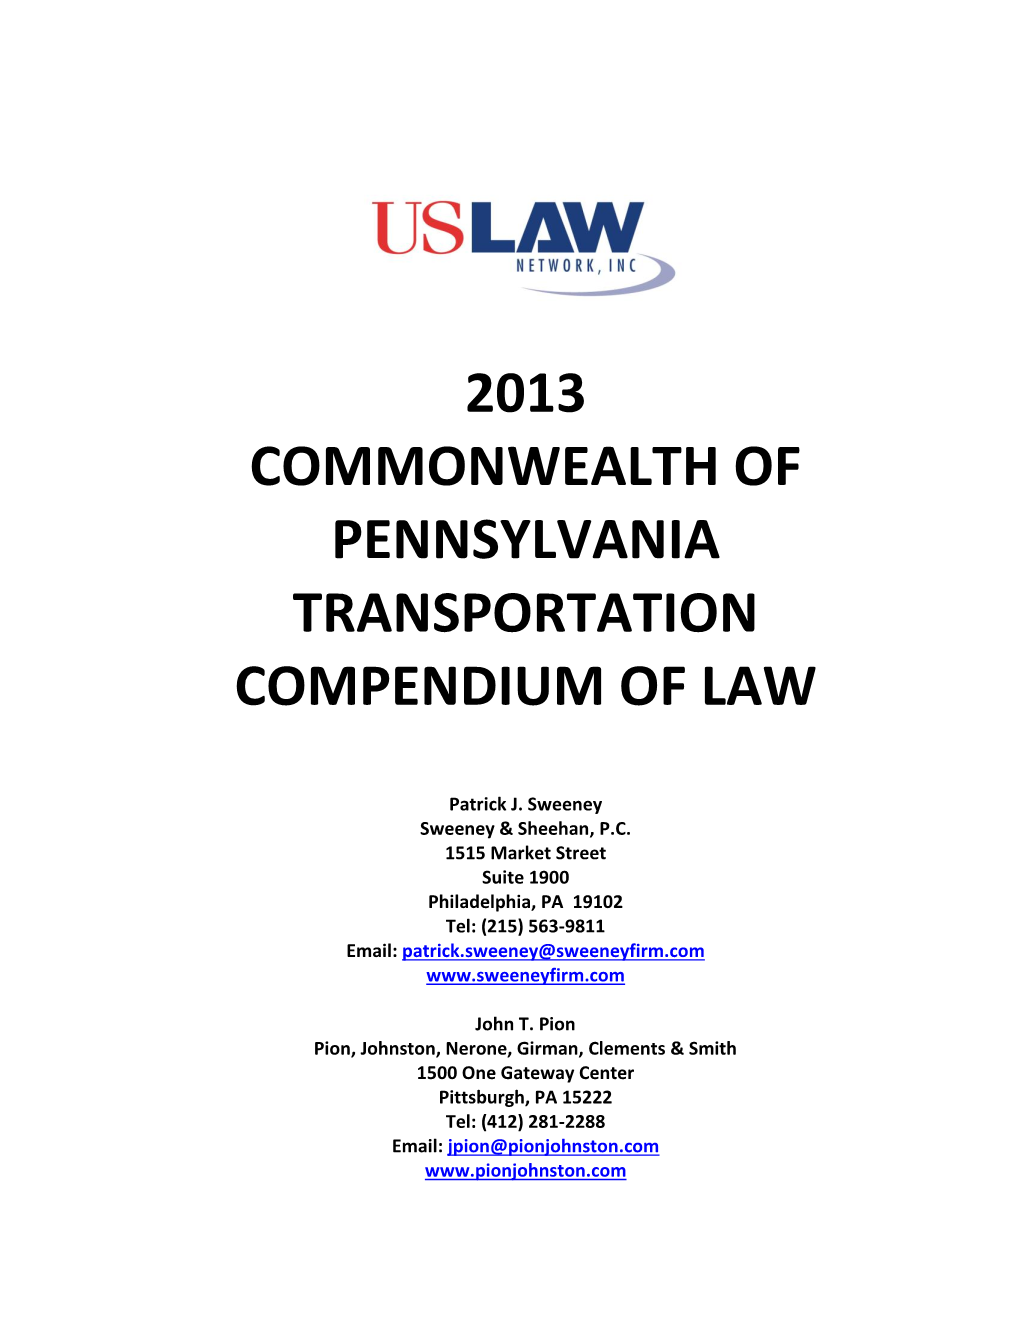 Transportation Law Compendium